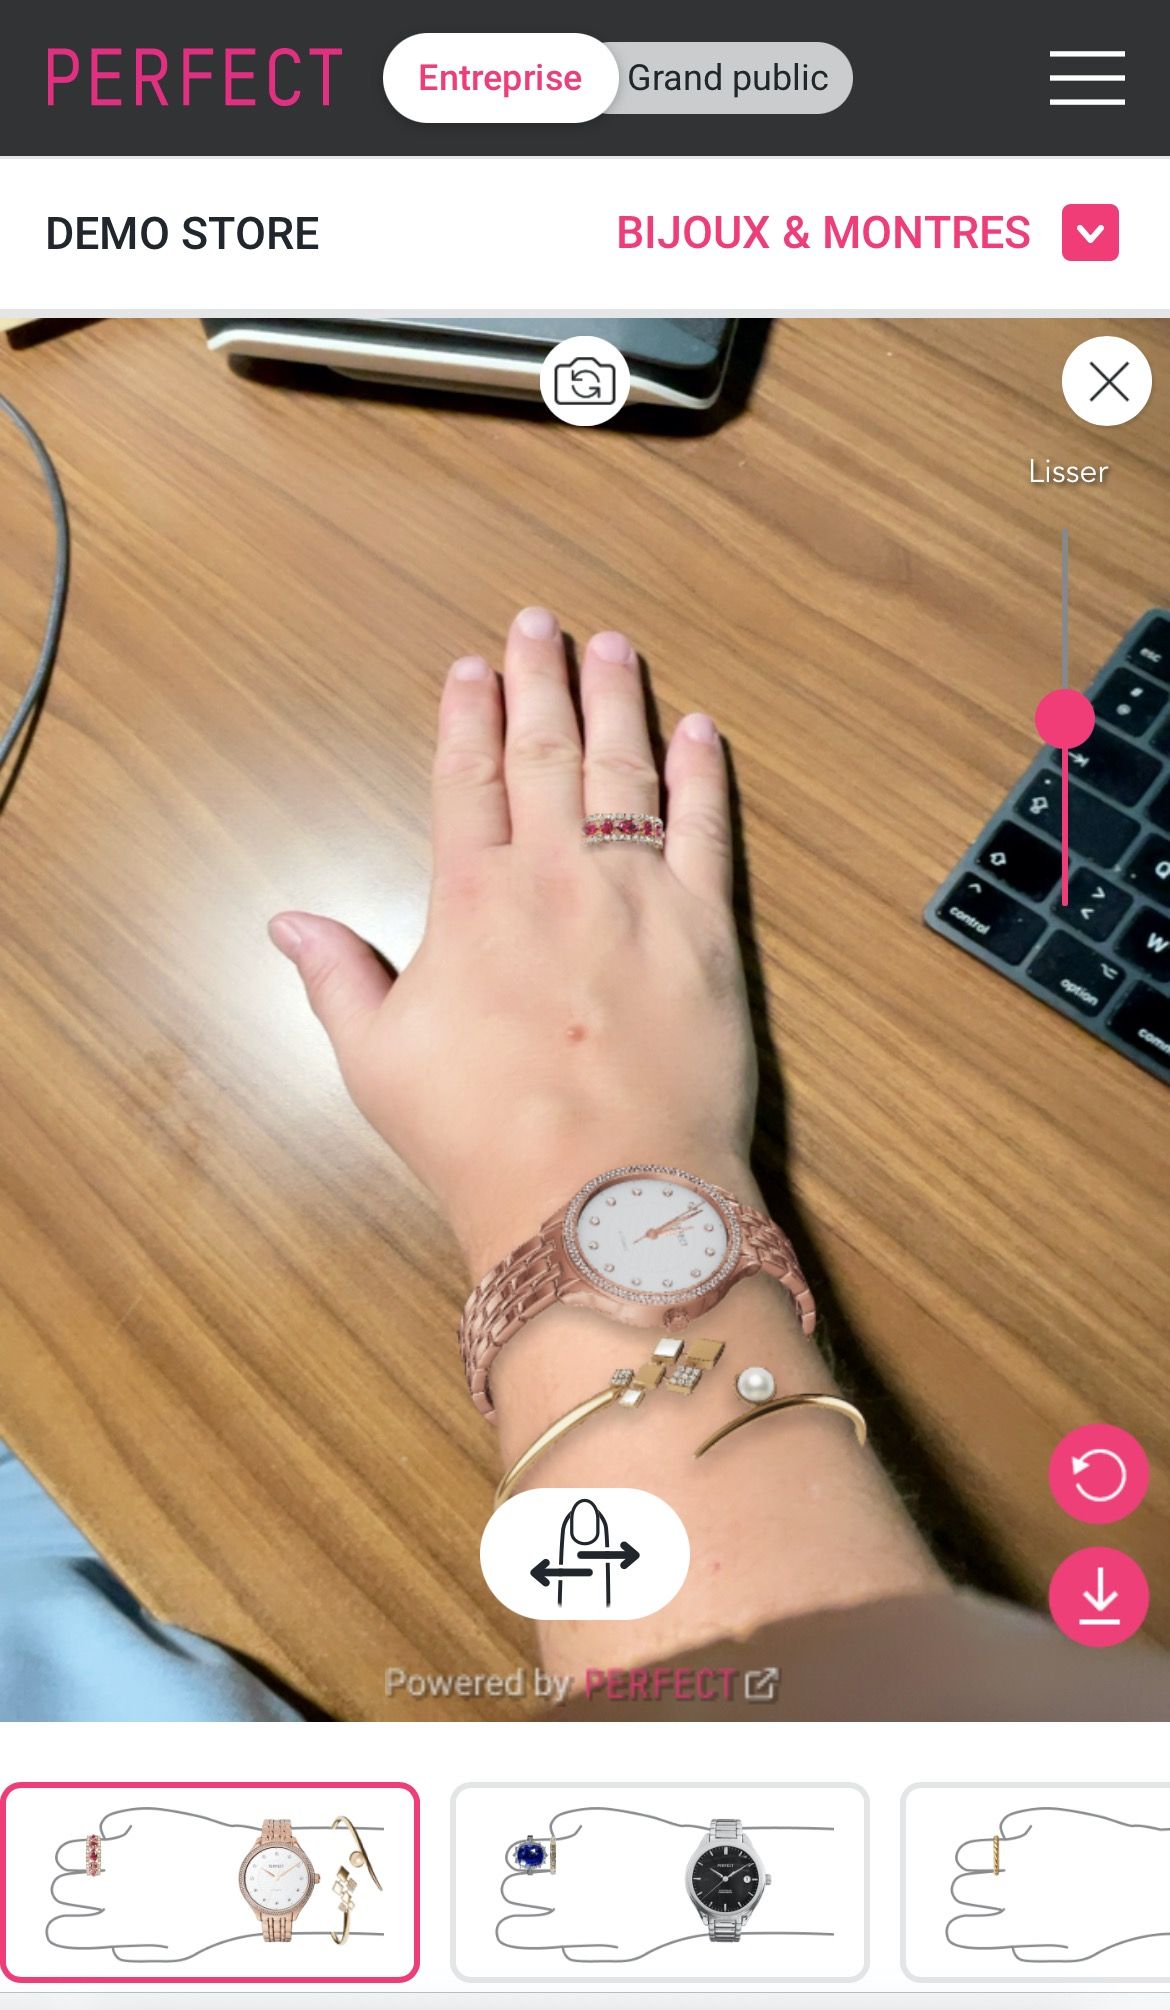 Perfect Corp. traite désormais l’essai virtuel de parures de montres, bracelets et bagues pour une expérience d’achat joaillerie améliorée